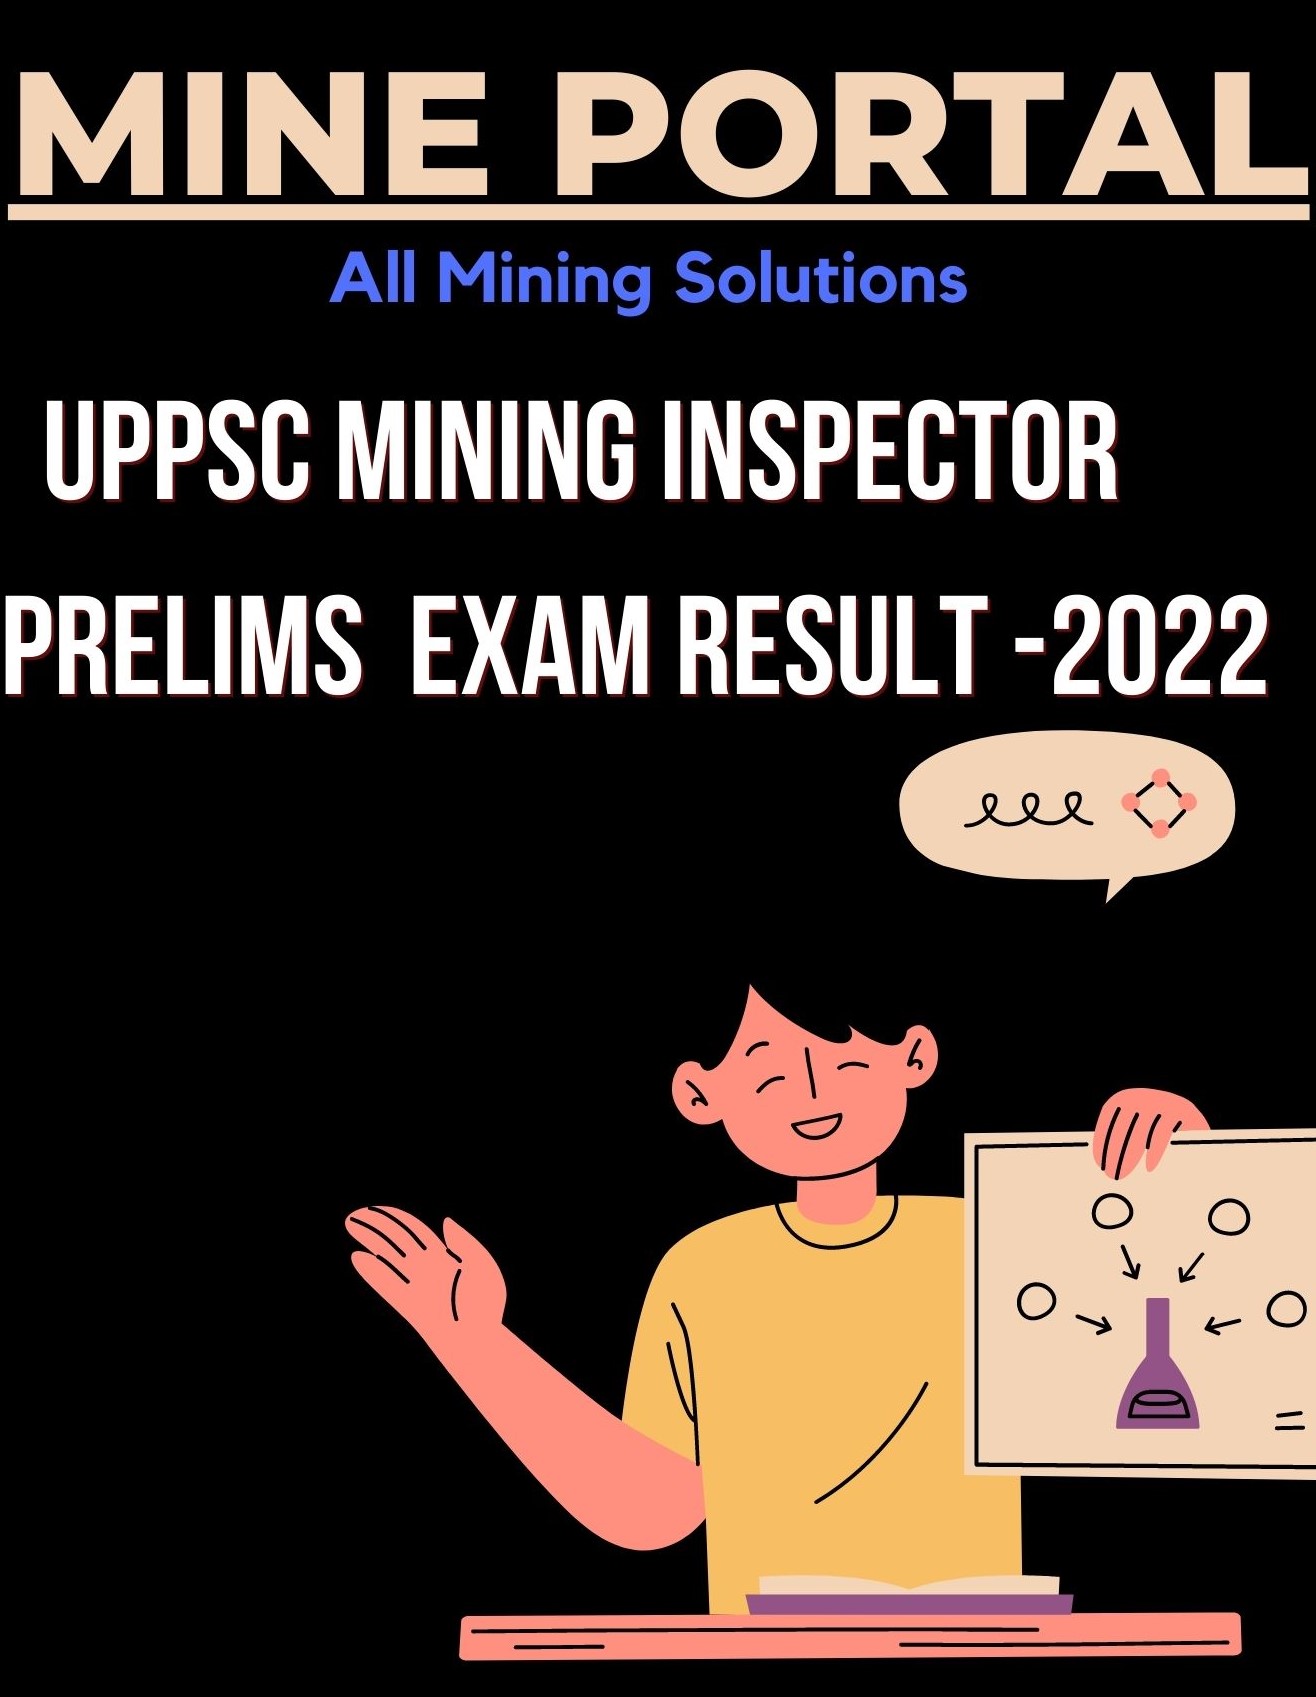 UPPSC MINING INSPECTOR EXAM 2022 PT RESULT